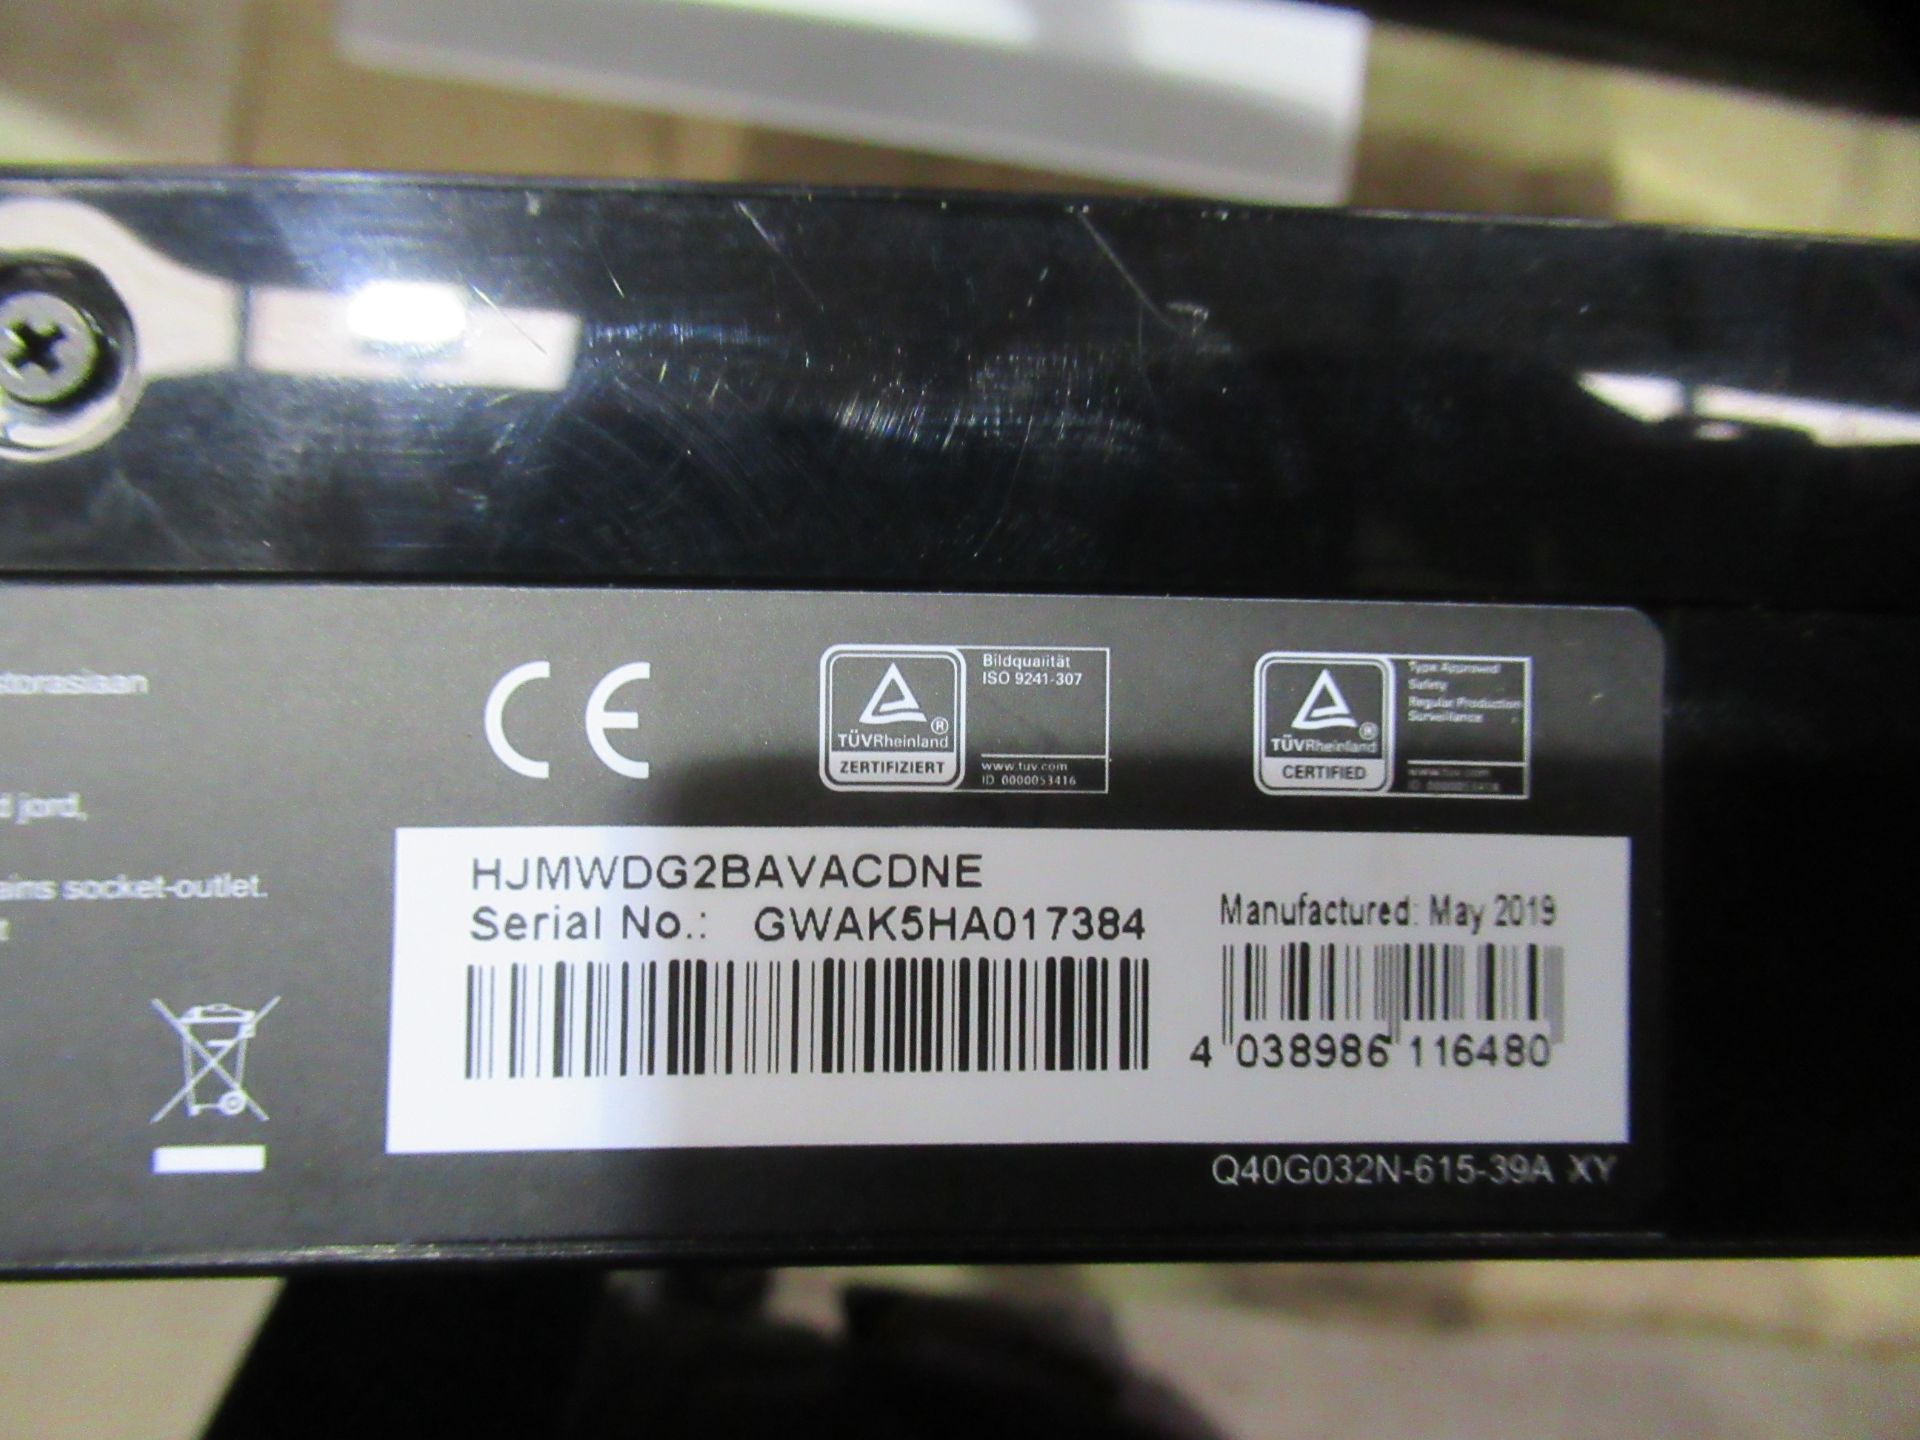 3x AOC LCD Monitors (LED Backlight) - Image 6 of 7